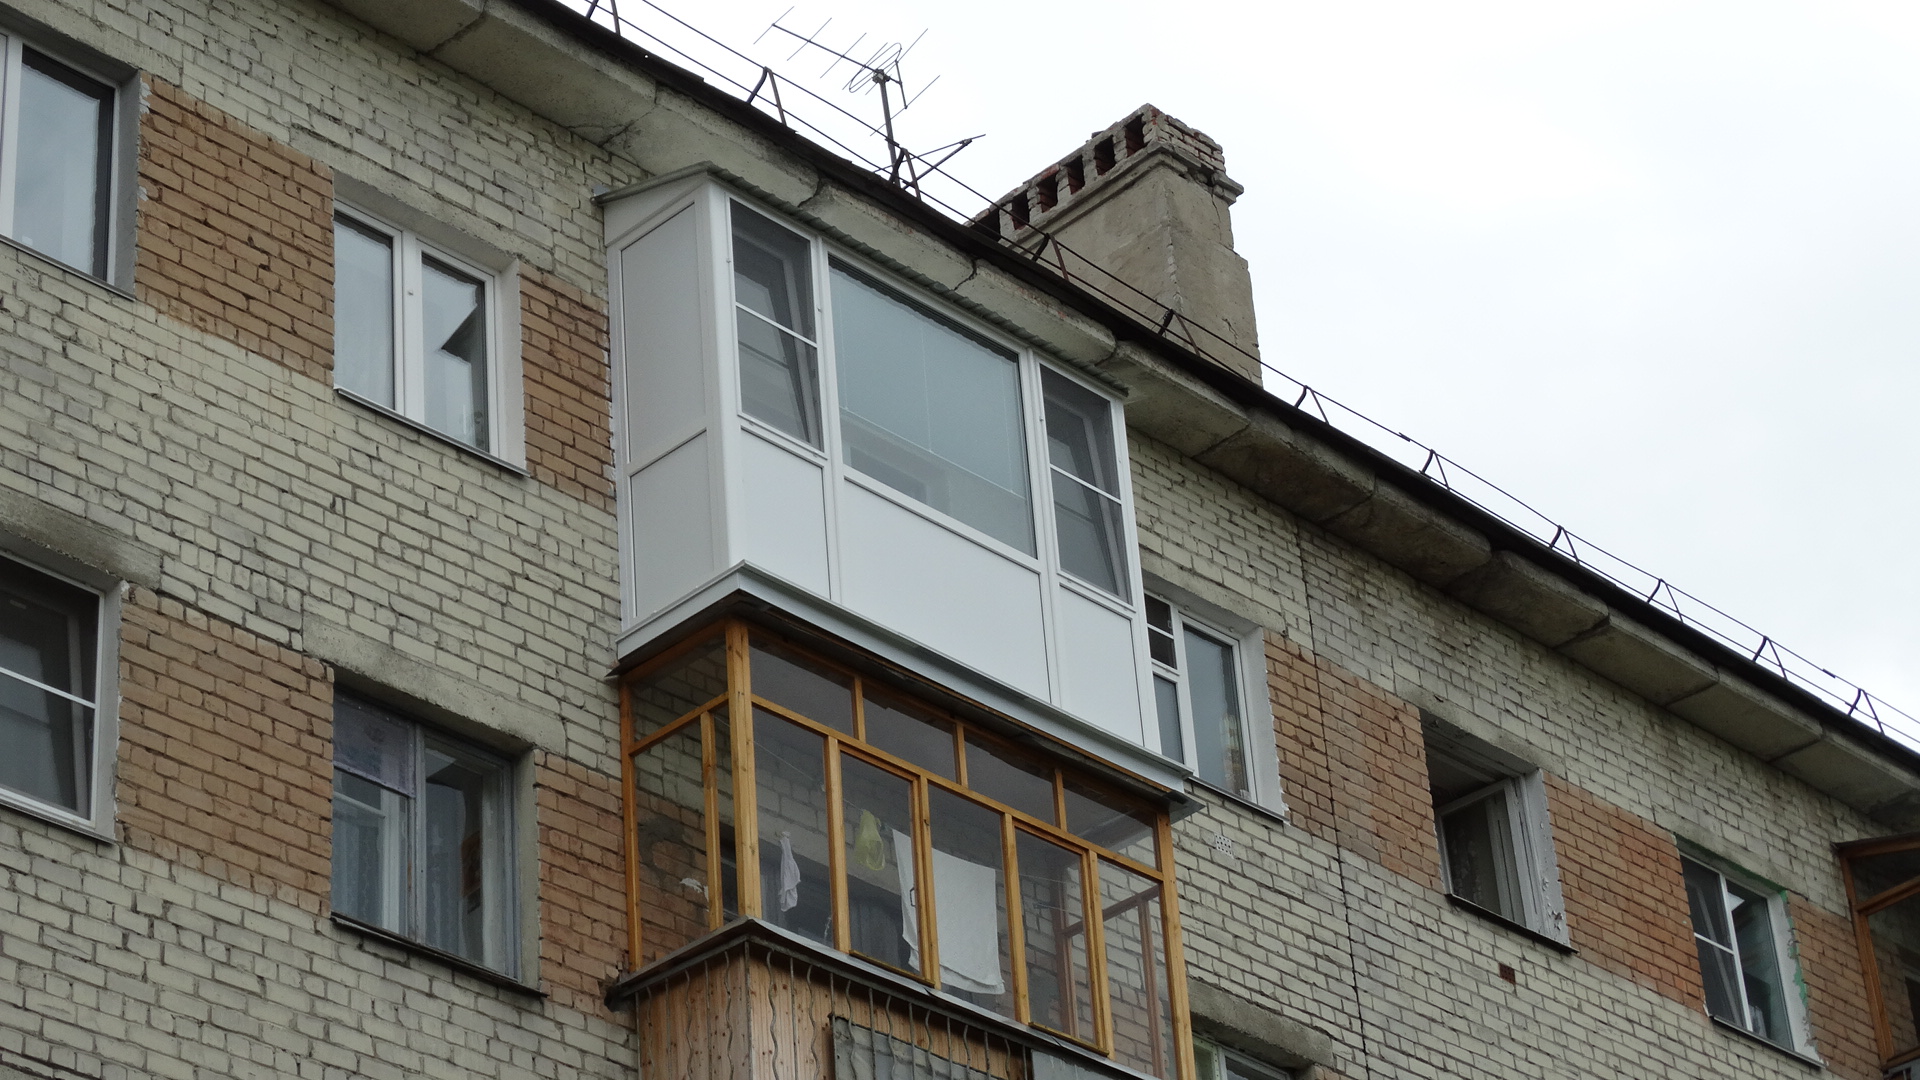  Застеклённые балконы под запретом: заставят снять и не разрешат сделать снова 